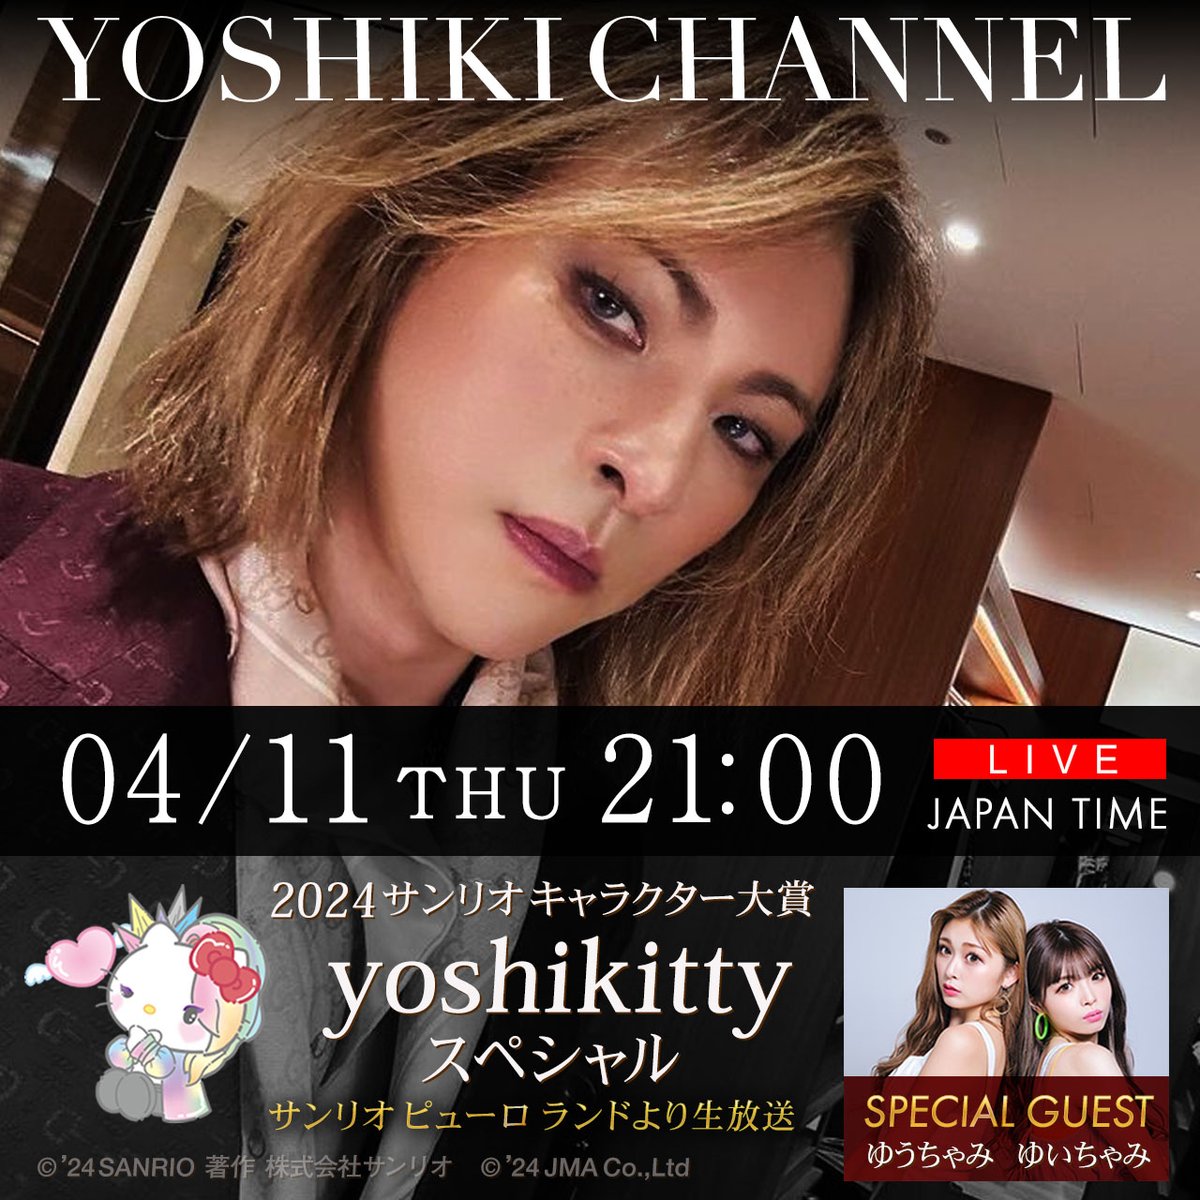 今夜はまた日本、 @YoshikiChannel に生出演する！ ちなみに明日はアメリカで映画の撮影。 来週は #ドジャースタジアム で国歌 演奏。　 今週も凄い週になりそう✨ See you tonight😀 #YOSHIKI #DodgerStadium #Hellokitty #Yoshikitty #サンリオキャラクター大賞2024